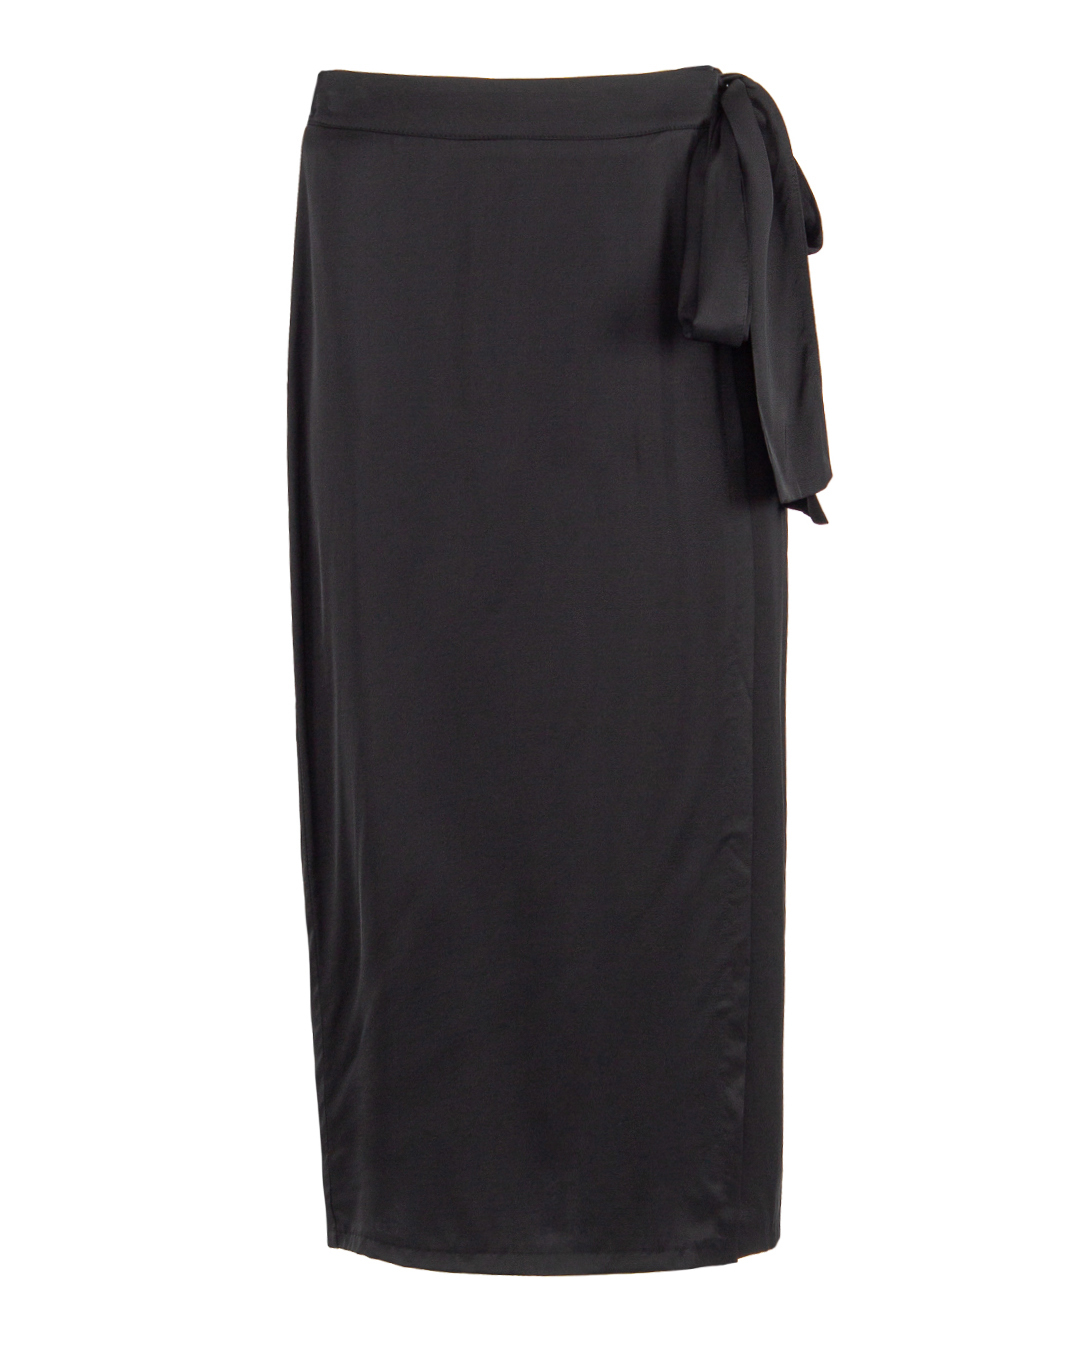 юбка ICONA BY KAOS PP5TZ007 черный 40, размер 40 - фото 1